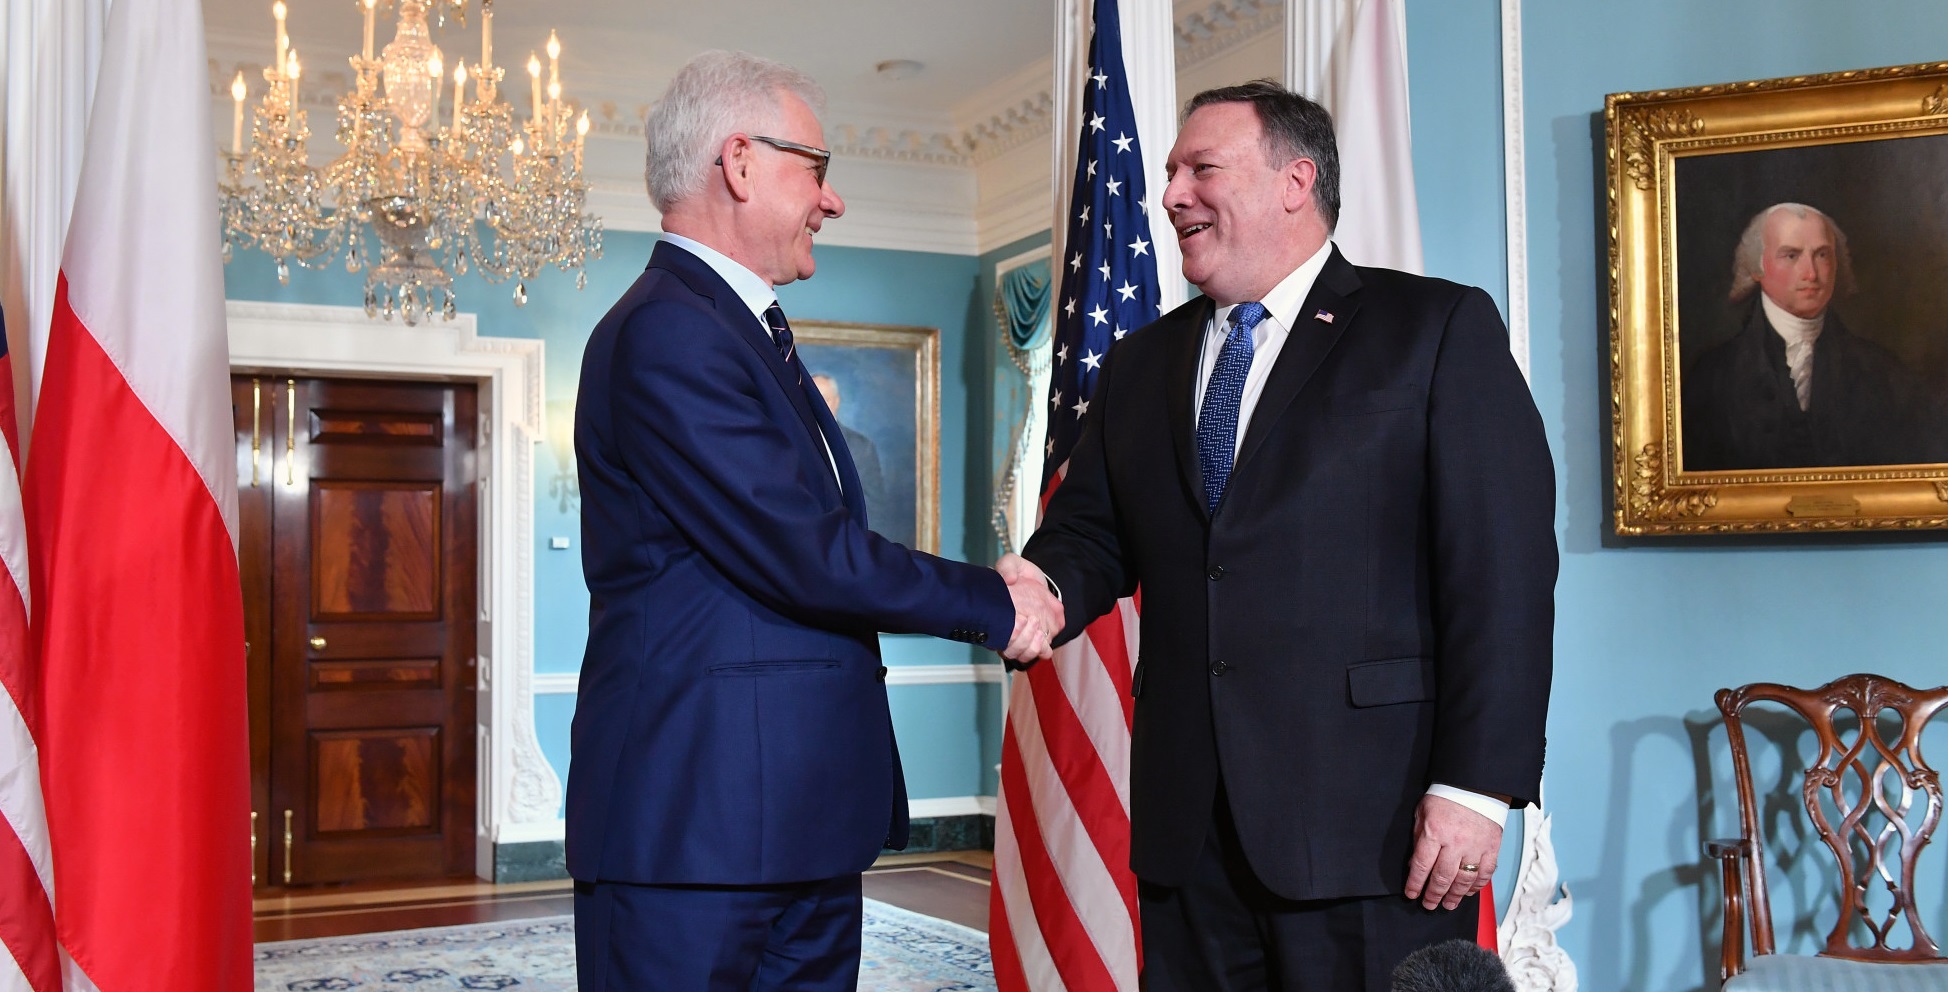 Польша и США совместно выступили против Северного потока-2